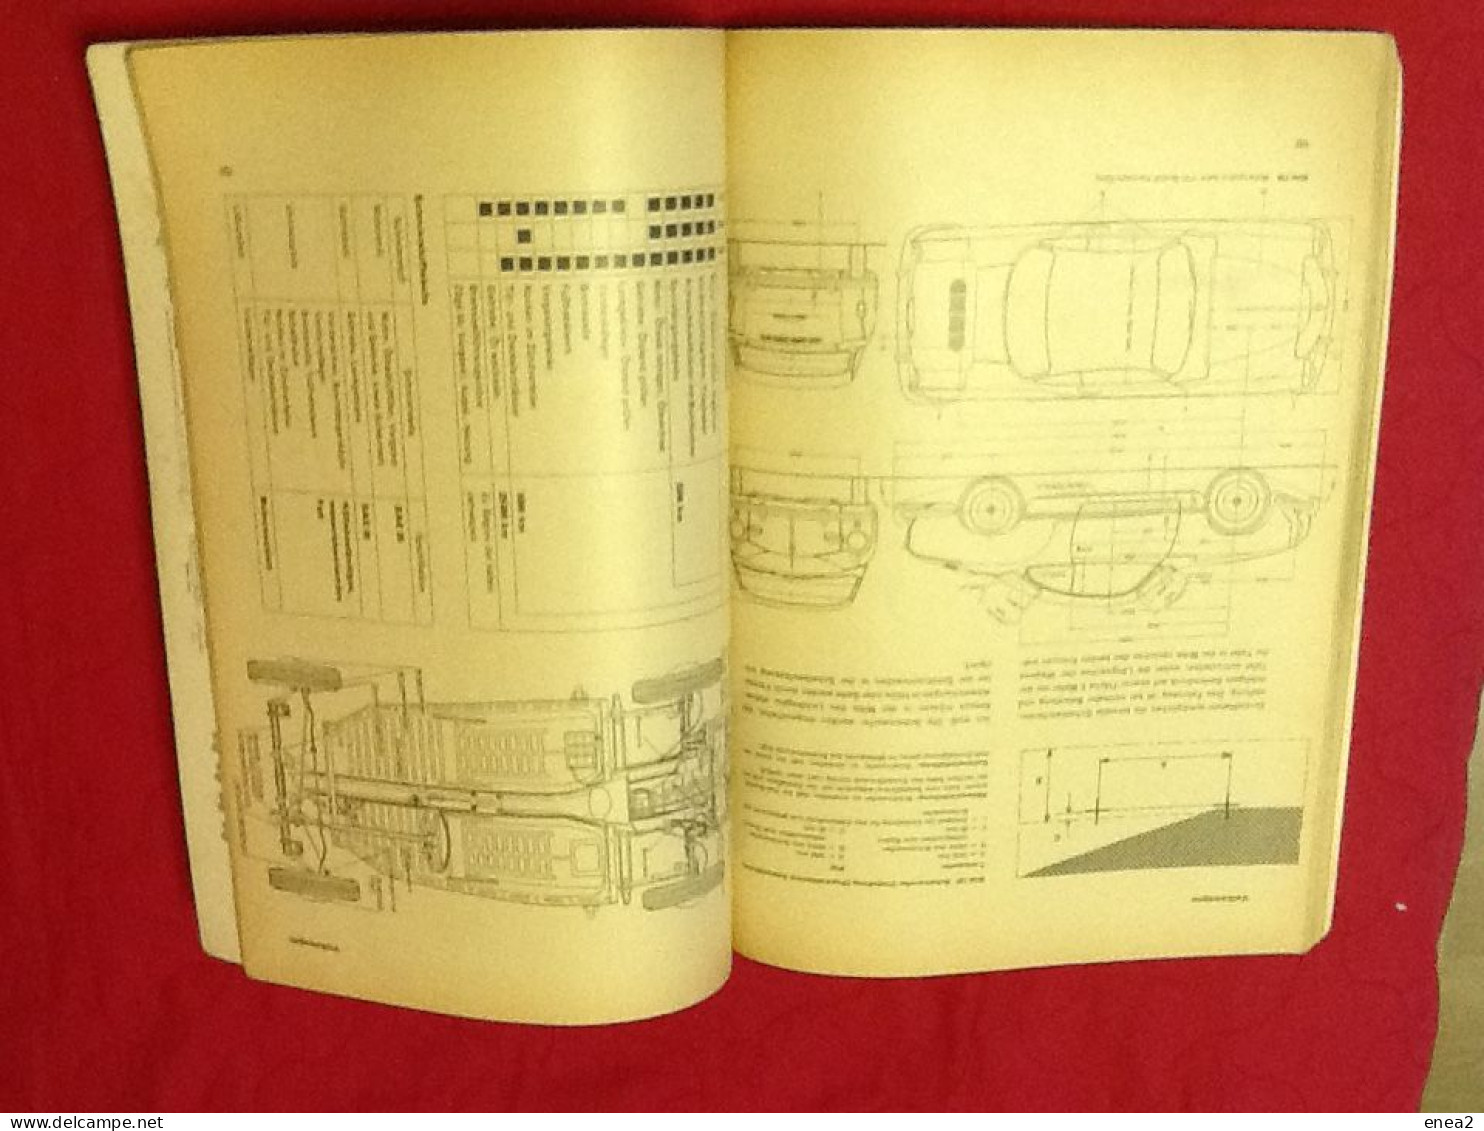 VOLKSWAGEN Maggiolone -Manuale tecnico/riparazione anni 60